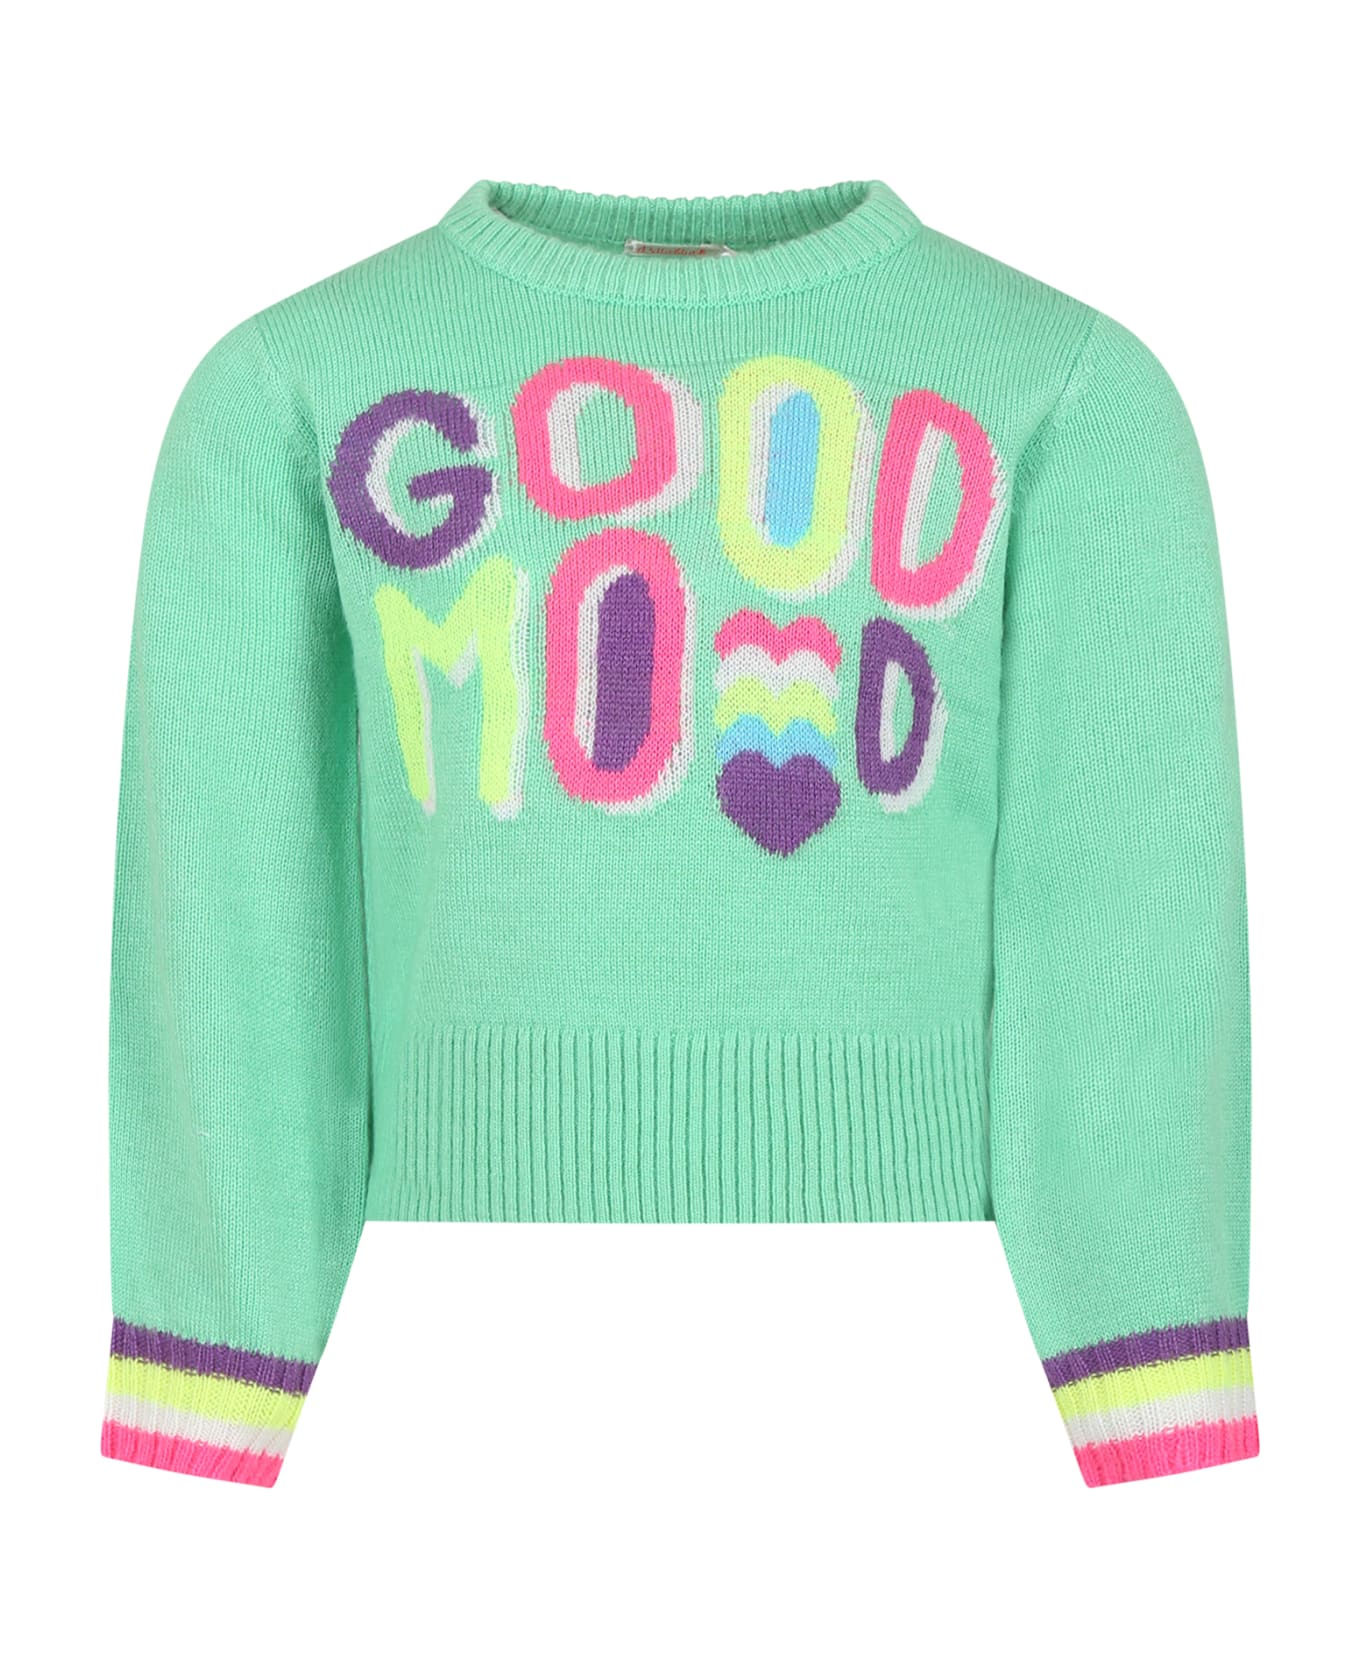 Billieblush Green Sweater For Girl - Green